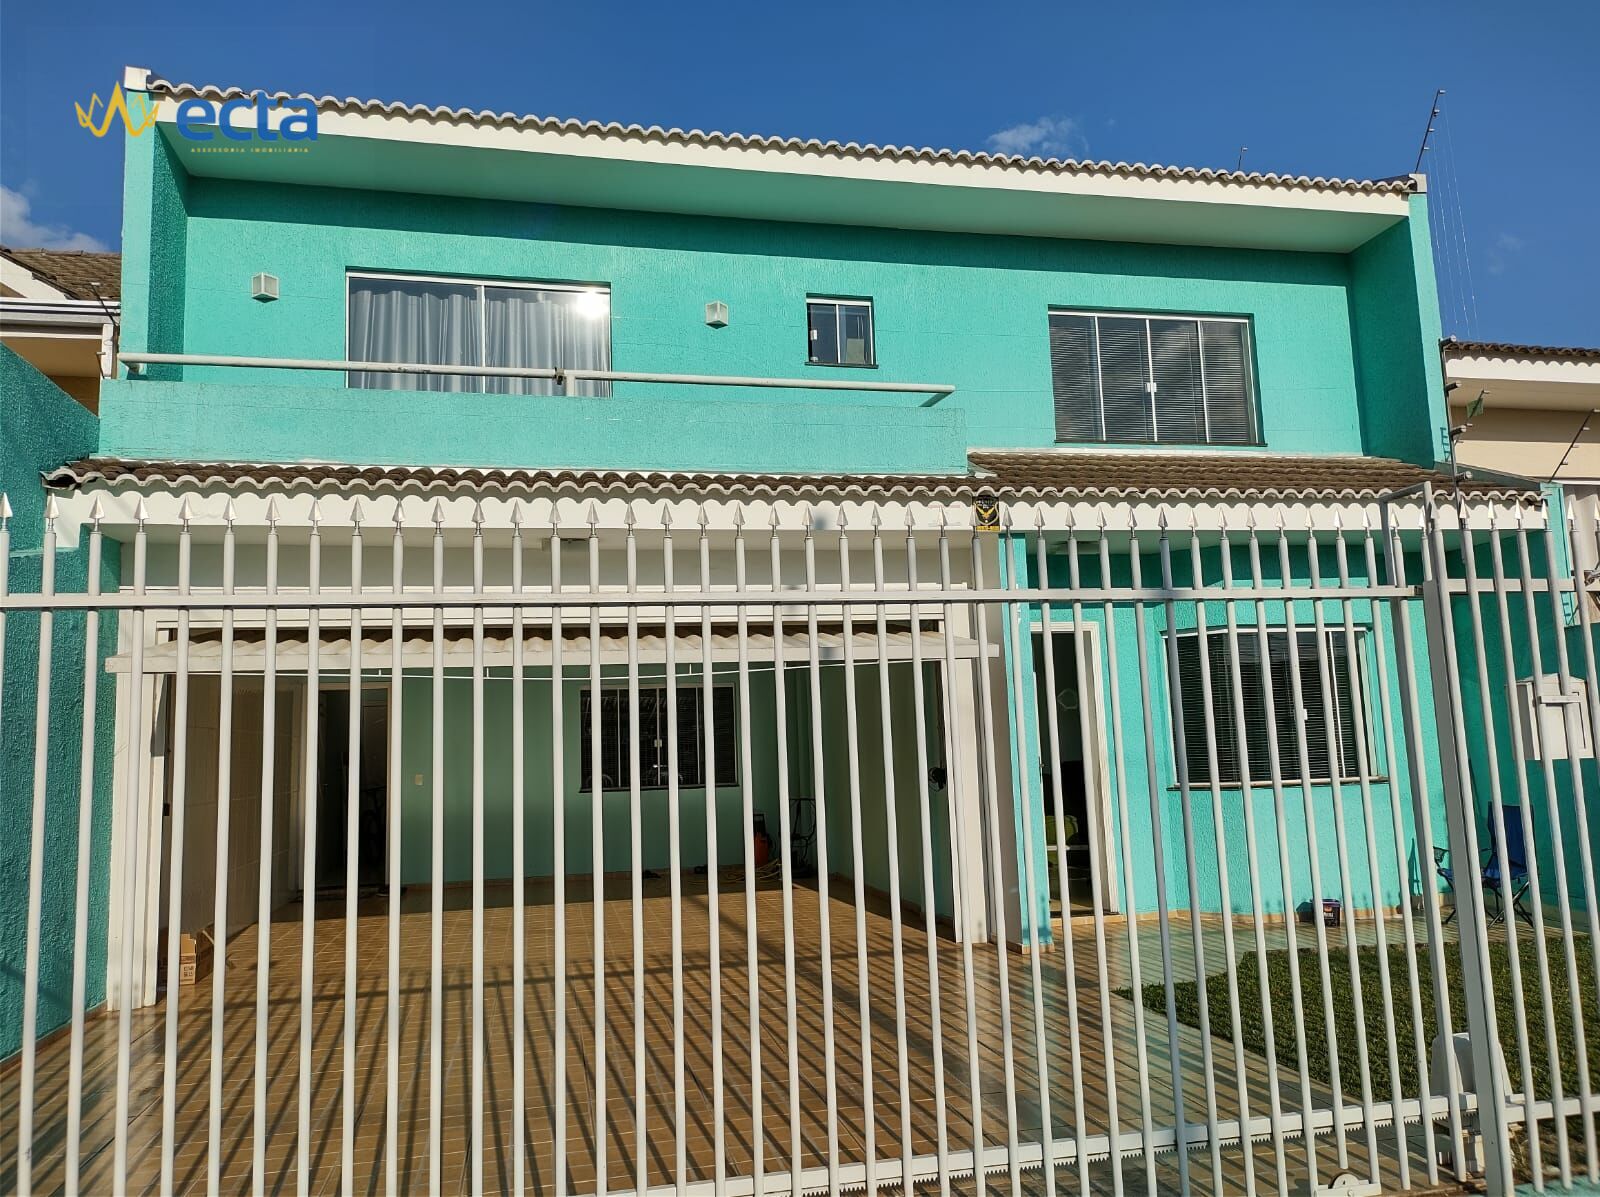 Sobrado com 3 dormitórios à venda, Alto da XV, GUARAPUAVA - PR